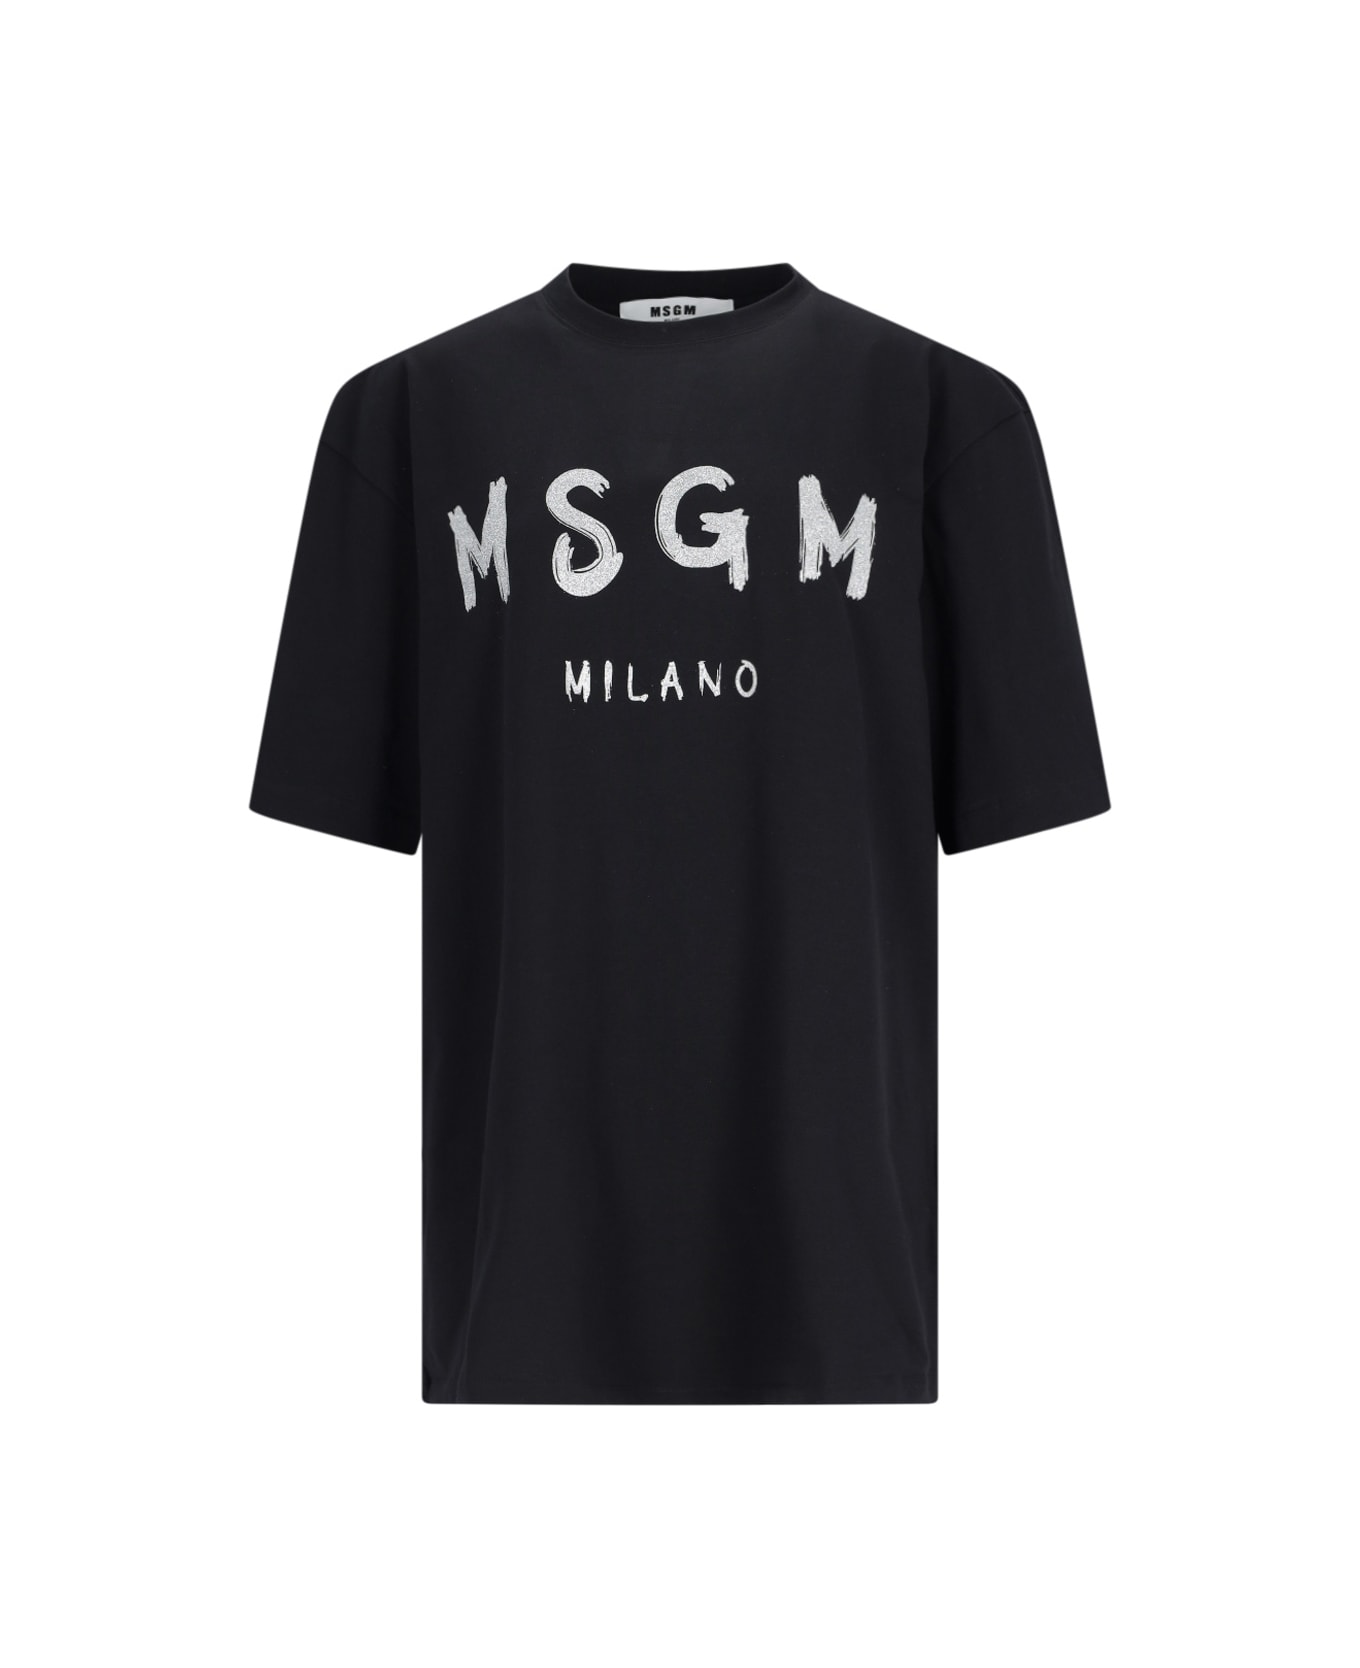 MSGM Printed T-shirt - Black   Tシャツ